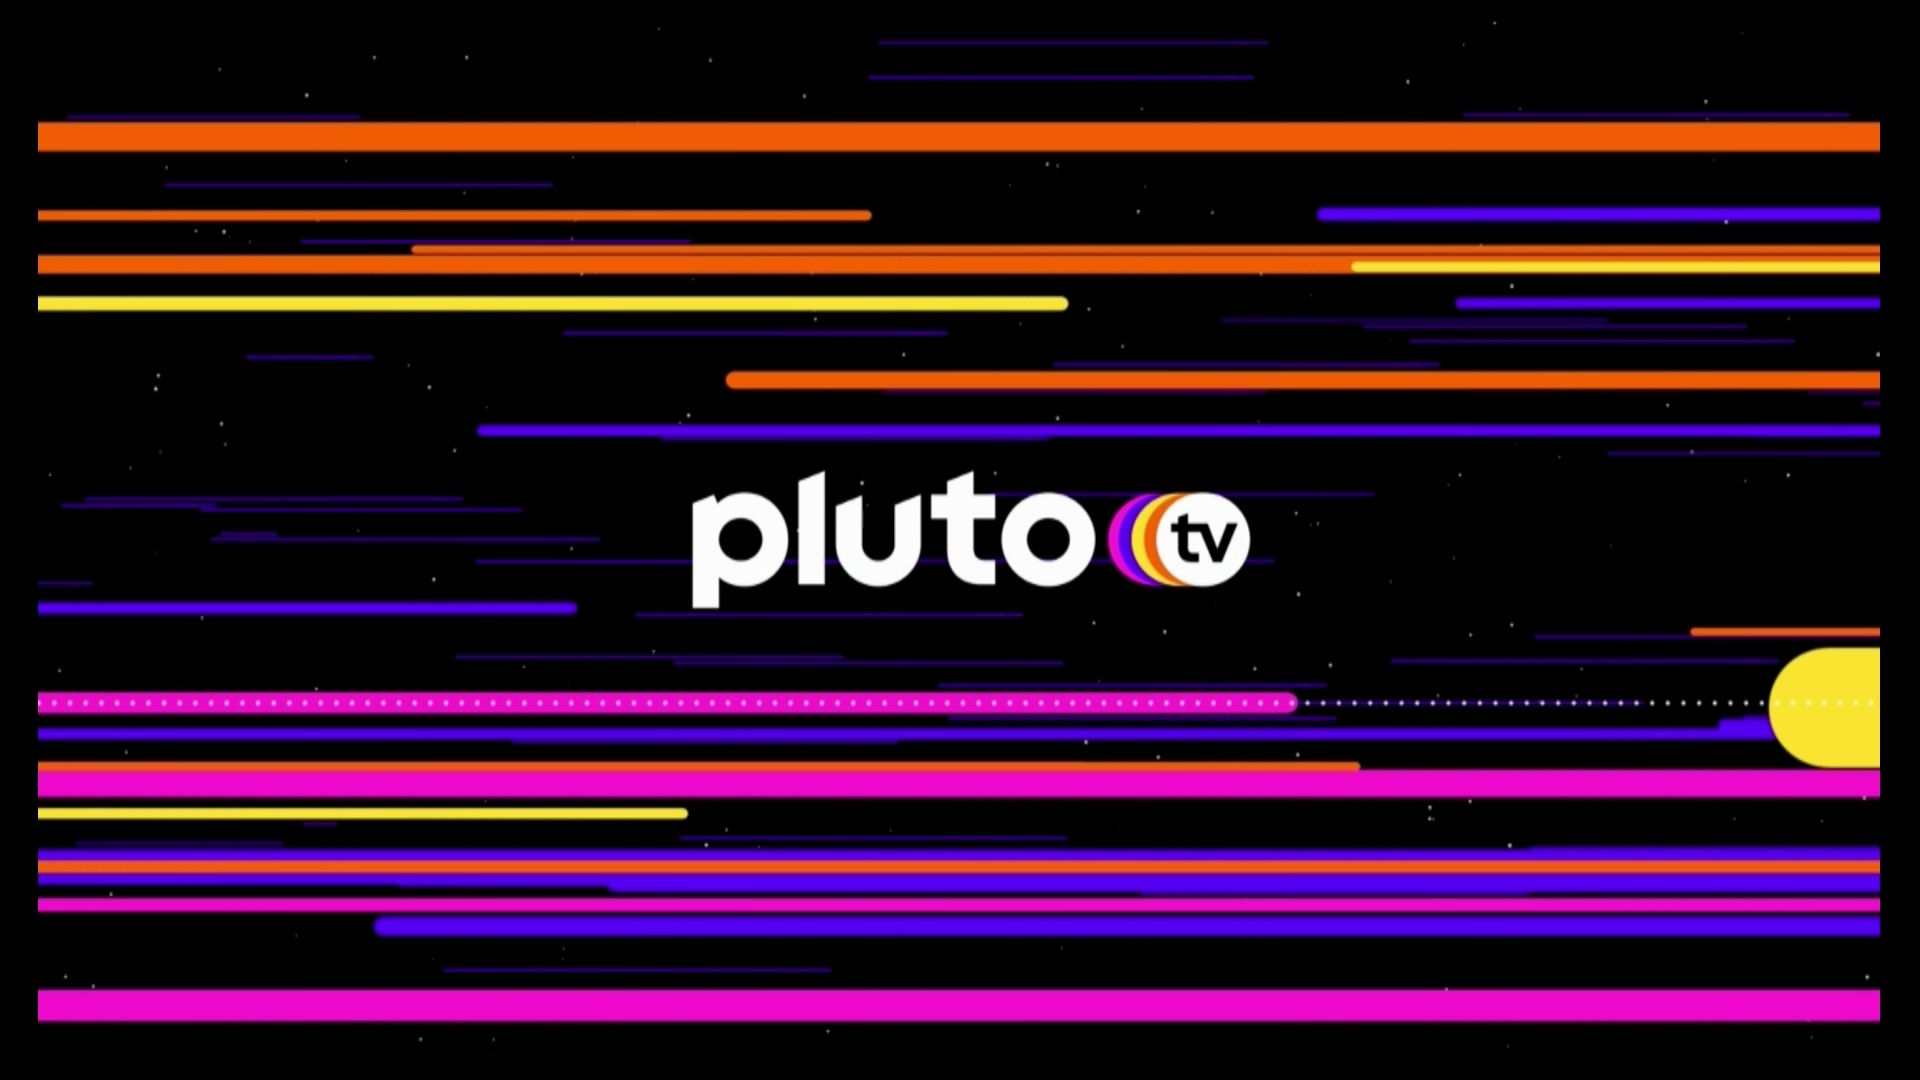 #Pluto TV hat jetzt einen eigenen Erklär-Sender